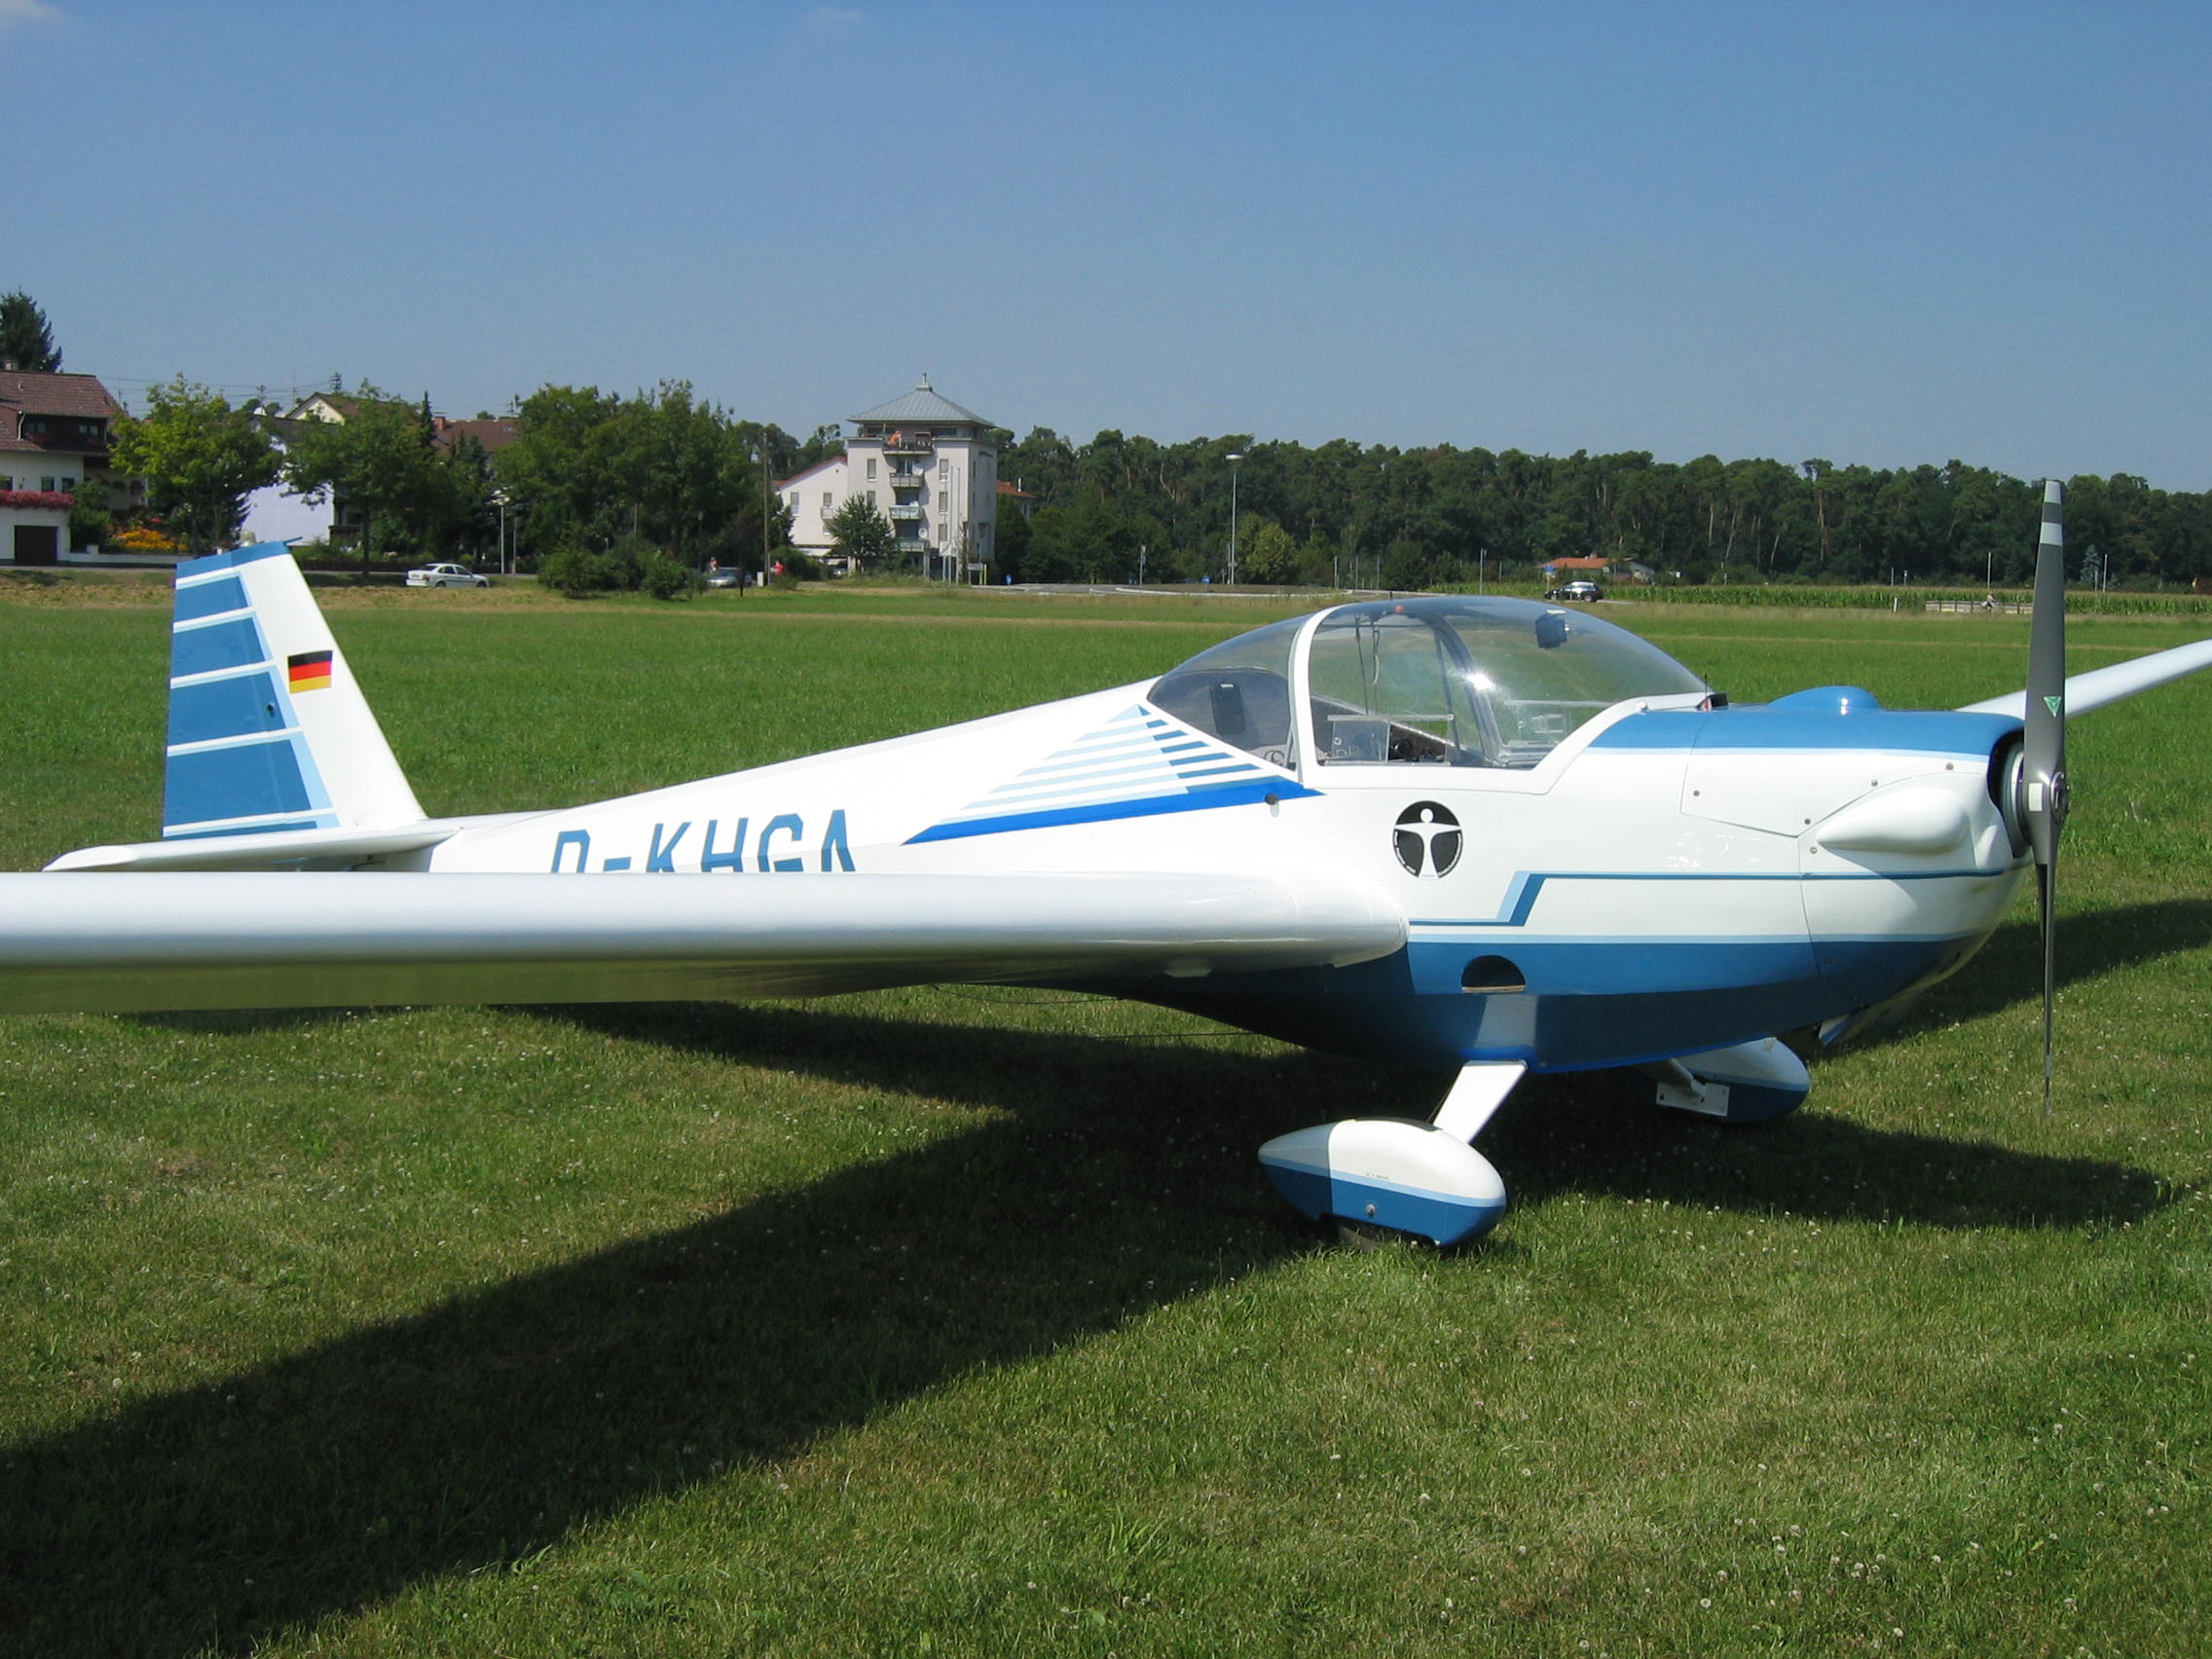 Motorsportflugzeug auf dem Flugplatz in Walldorf